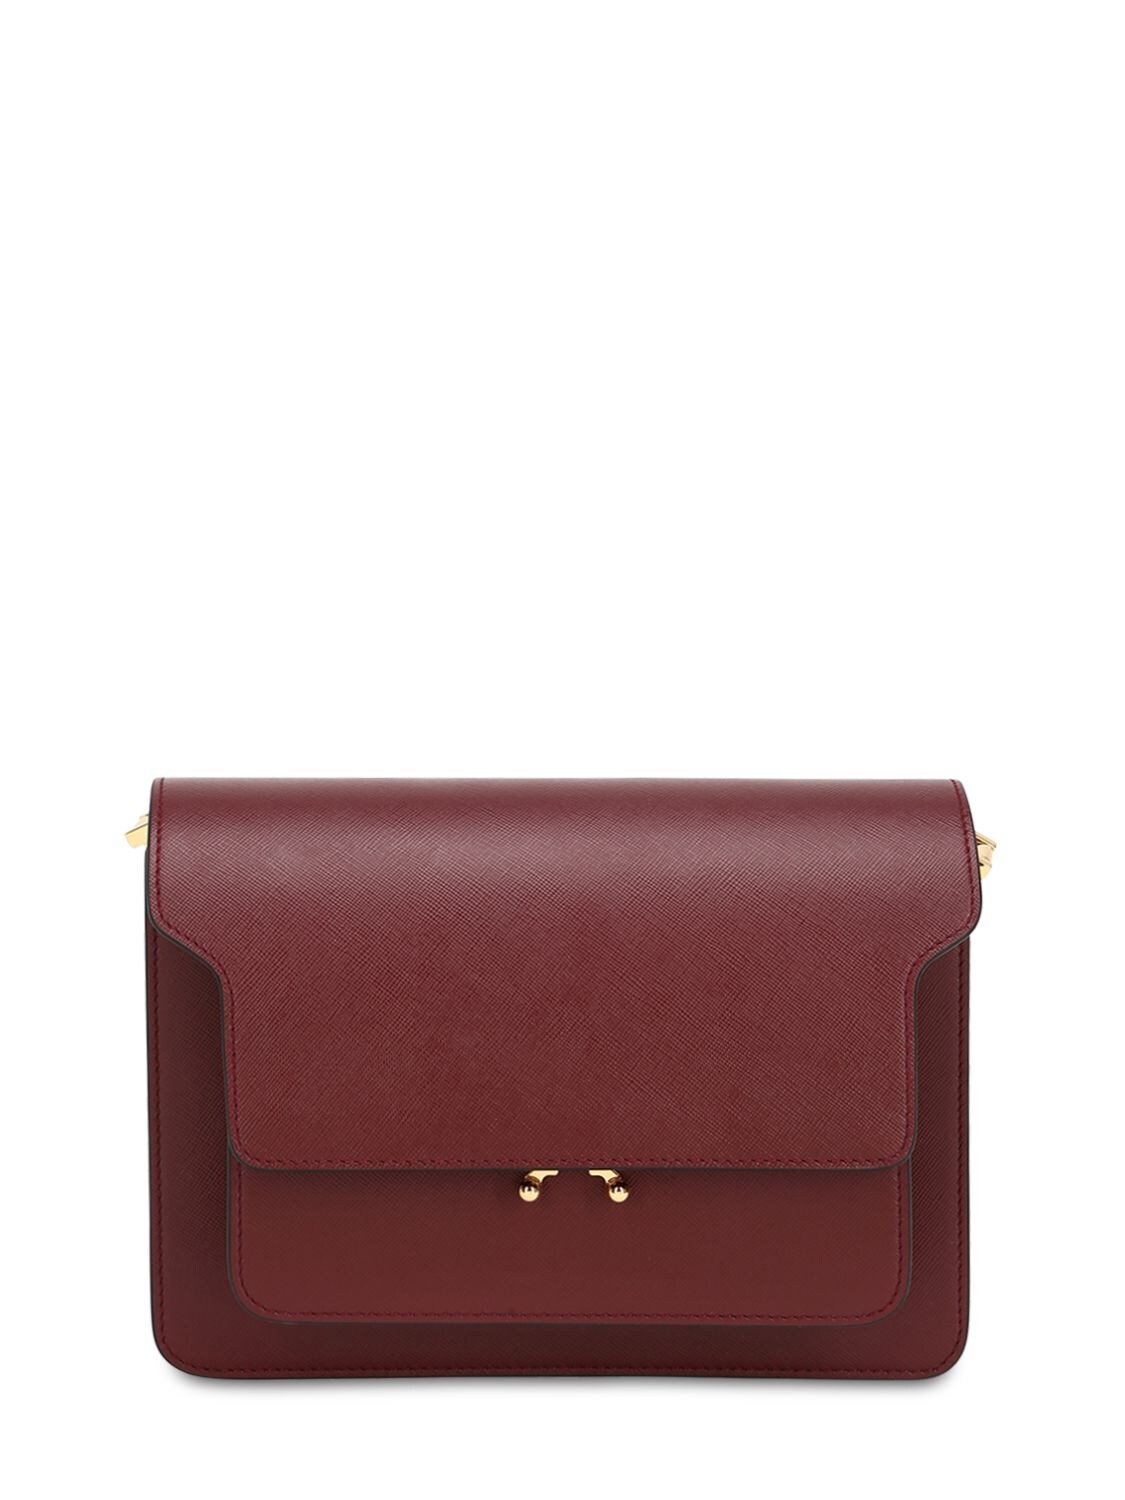 Marni Medium Saffiano Leather Trunk Bag In Ruby